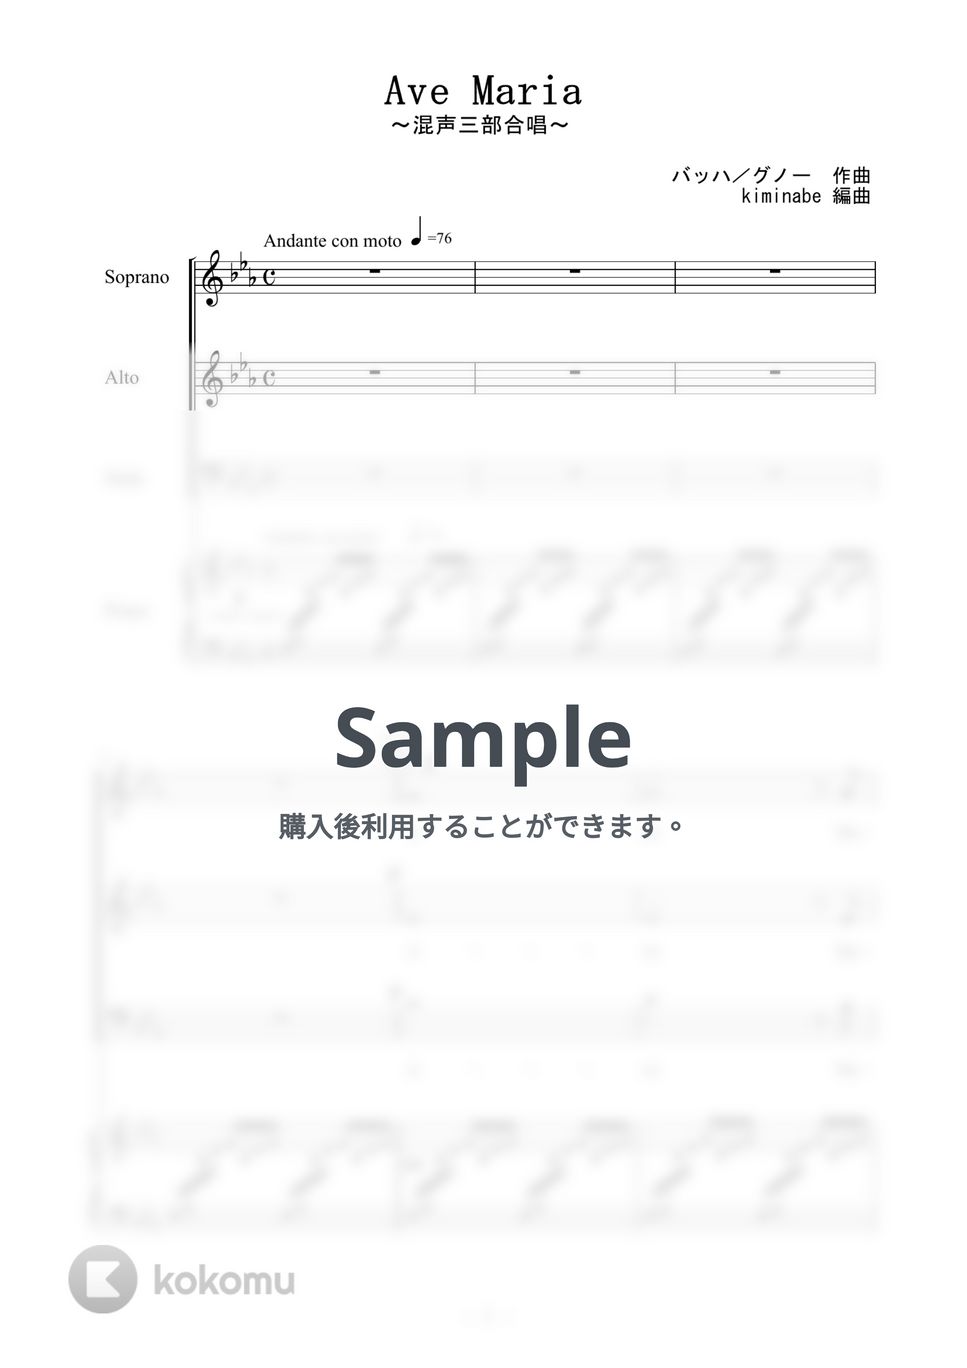 グノー - Ave Maria (混声三部合唱) by kiminabe